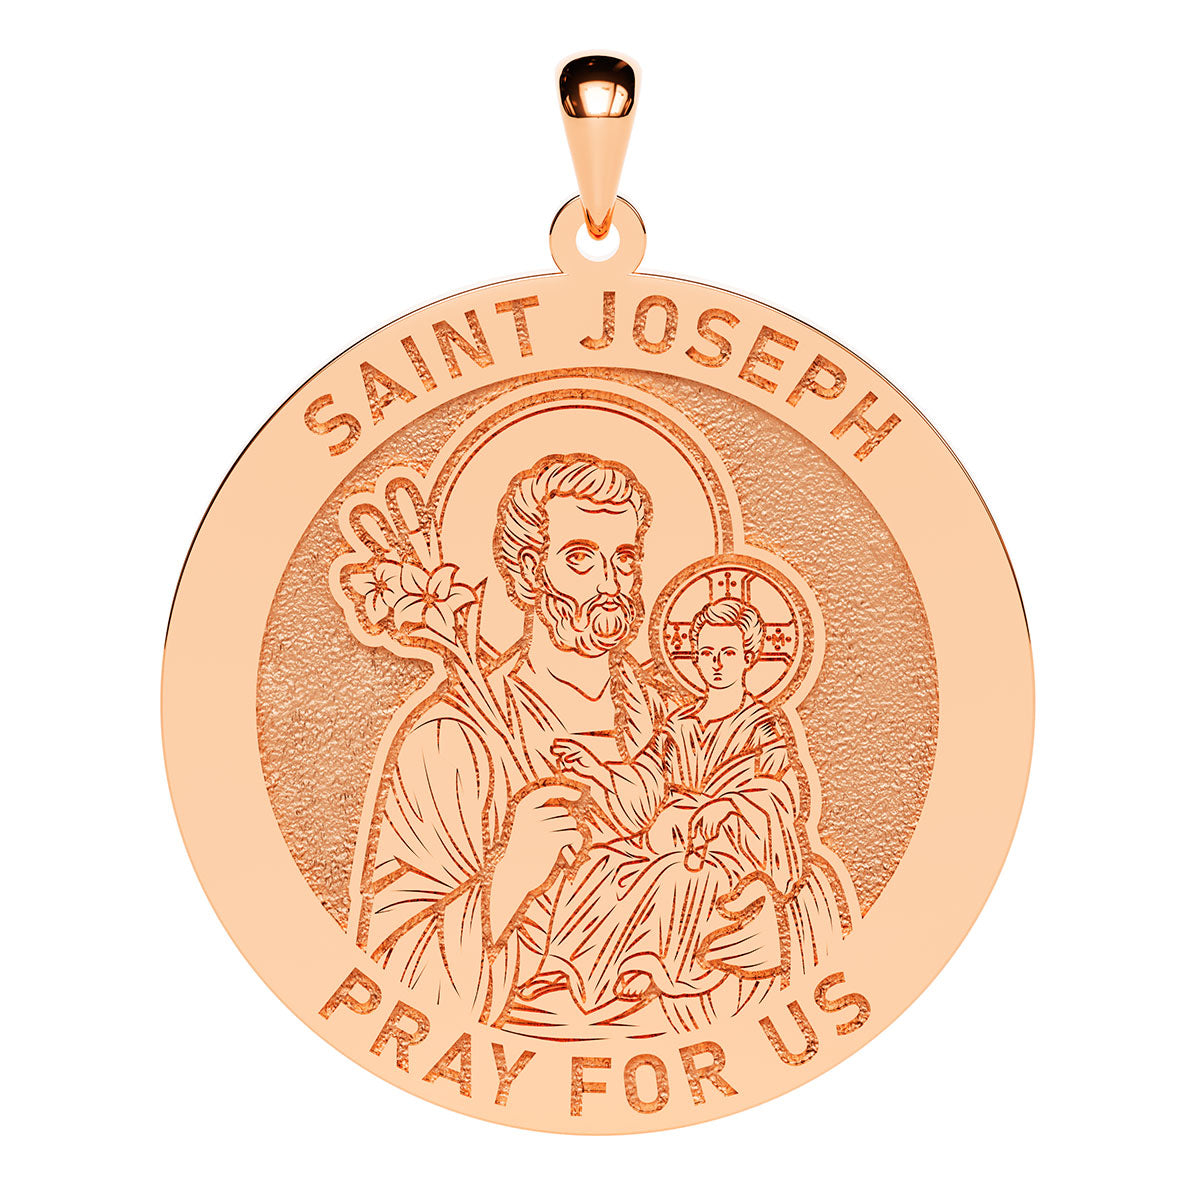 Saint Joseph Round Religious Medal